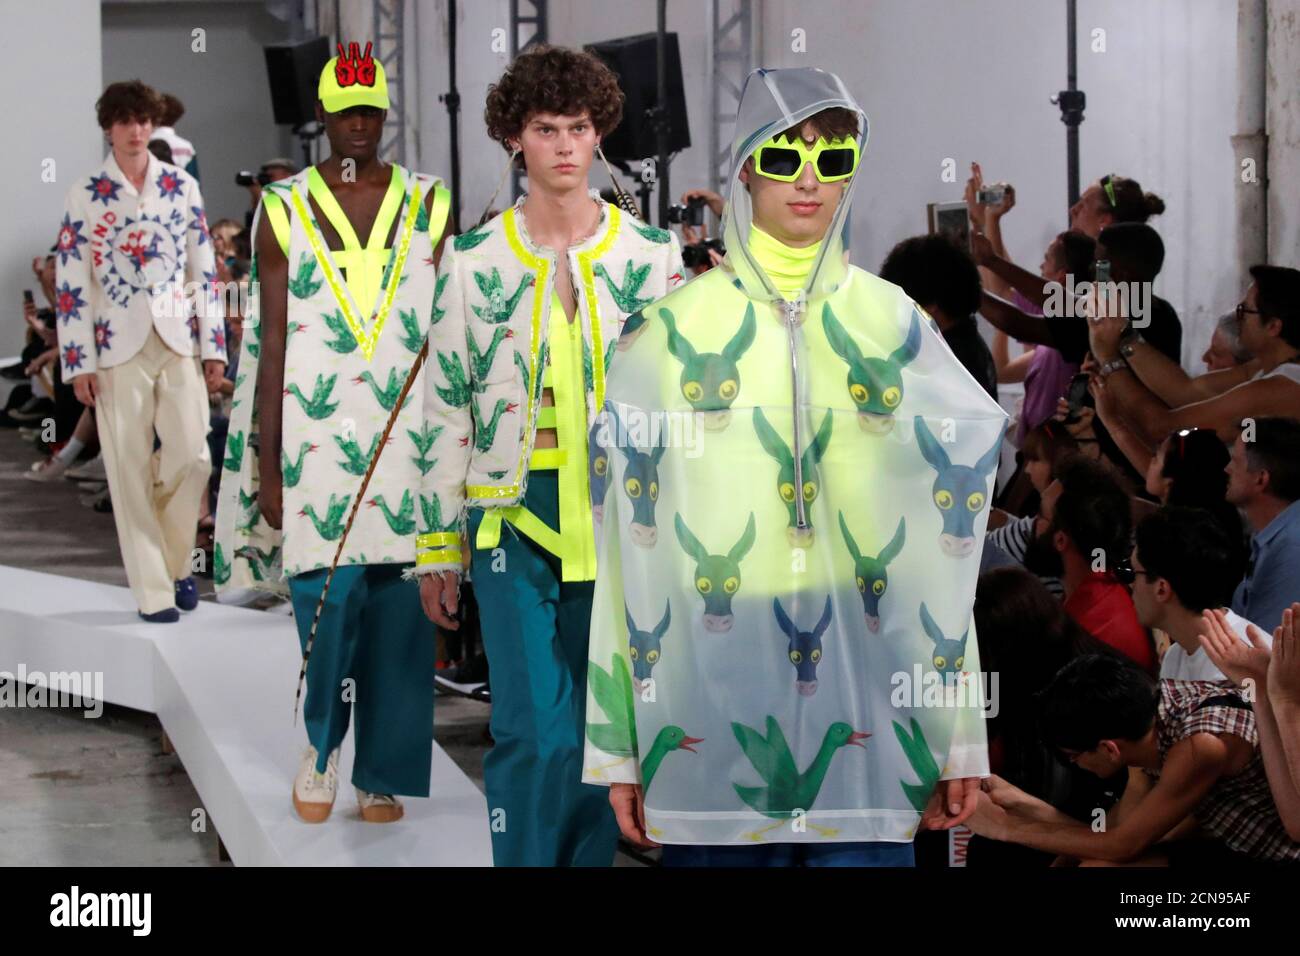 Los modelos presentan creaciones del diseñador Walter Van Beiras como parte de su colección Primavera/Verano 2019 durante la Semana la Moda masculina en París, Francia, 20 de junio de 2018. REUTERS/Charles